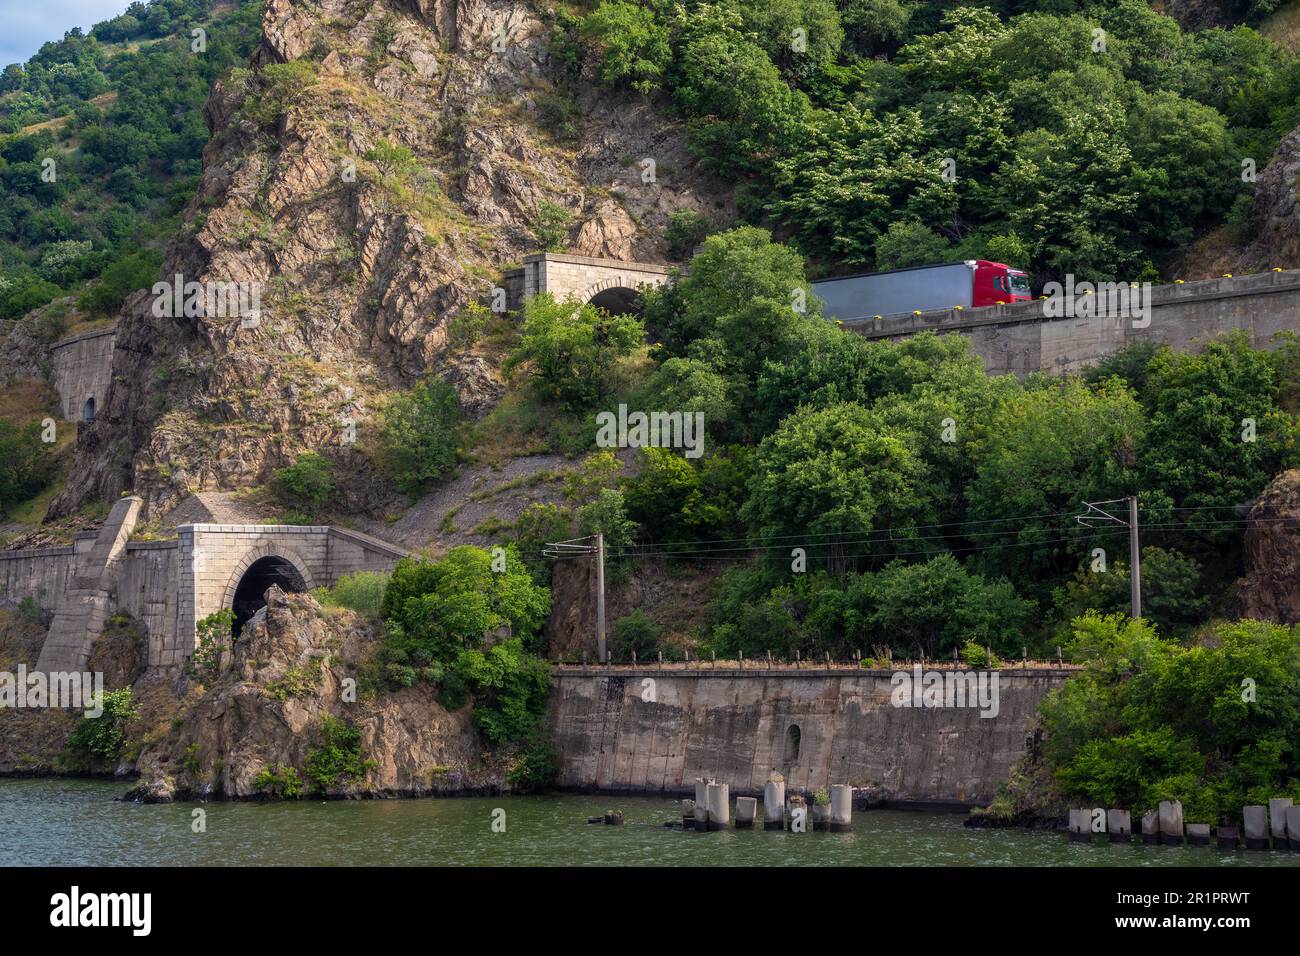 Entlang der Eisernen Tor-Schlucht an der Donau in Rumänien führen Schienen- und Straßenverbindungen. Tunnel und Routen schneiden durch die Felsen an den Klippen. Stockfoto